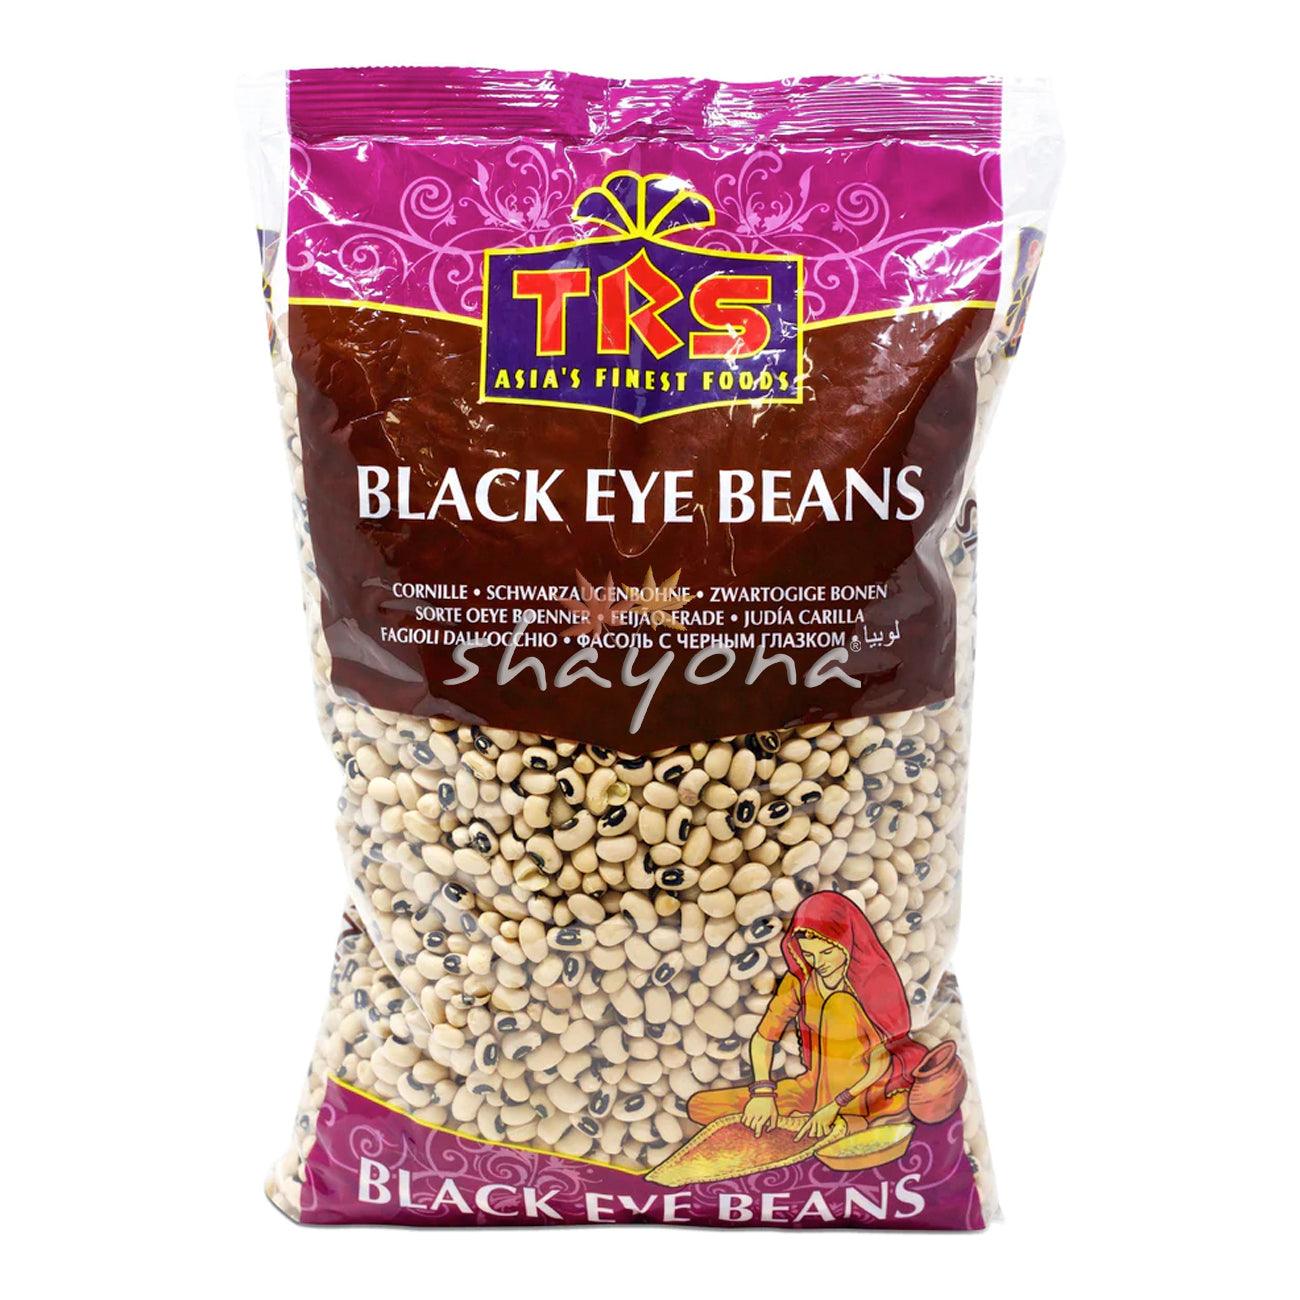 TRS Black Eye Beans - Shayona UK